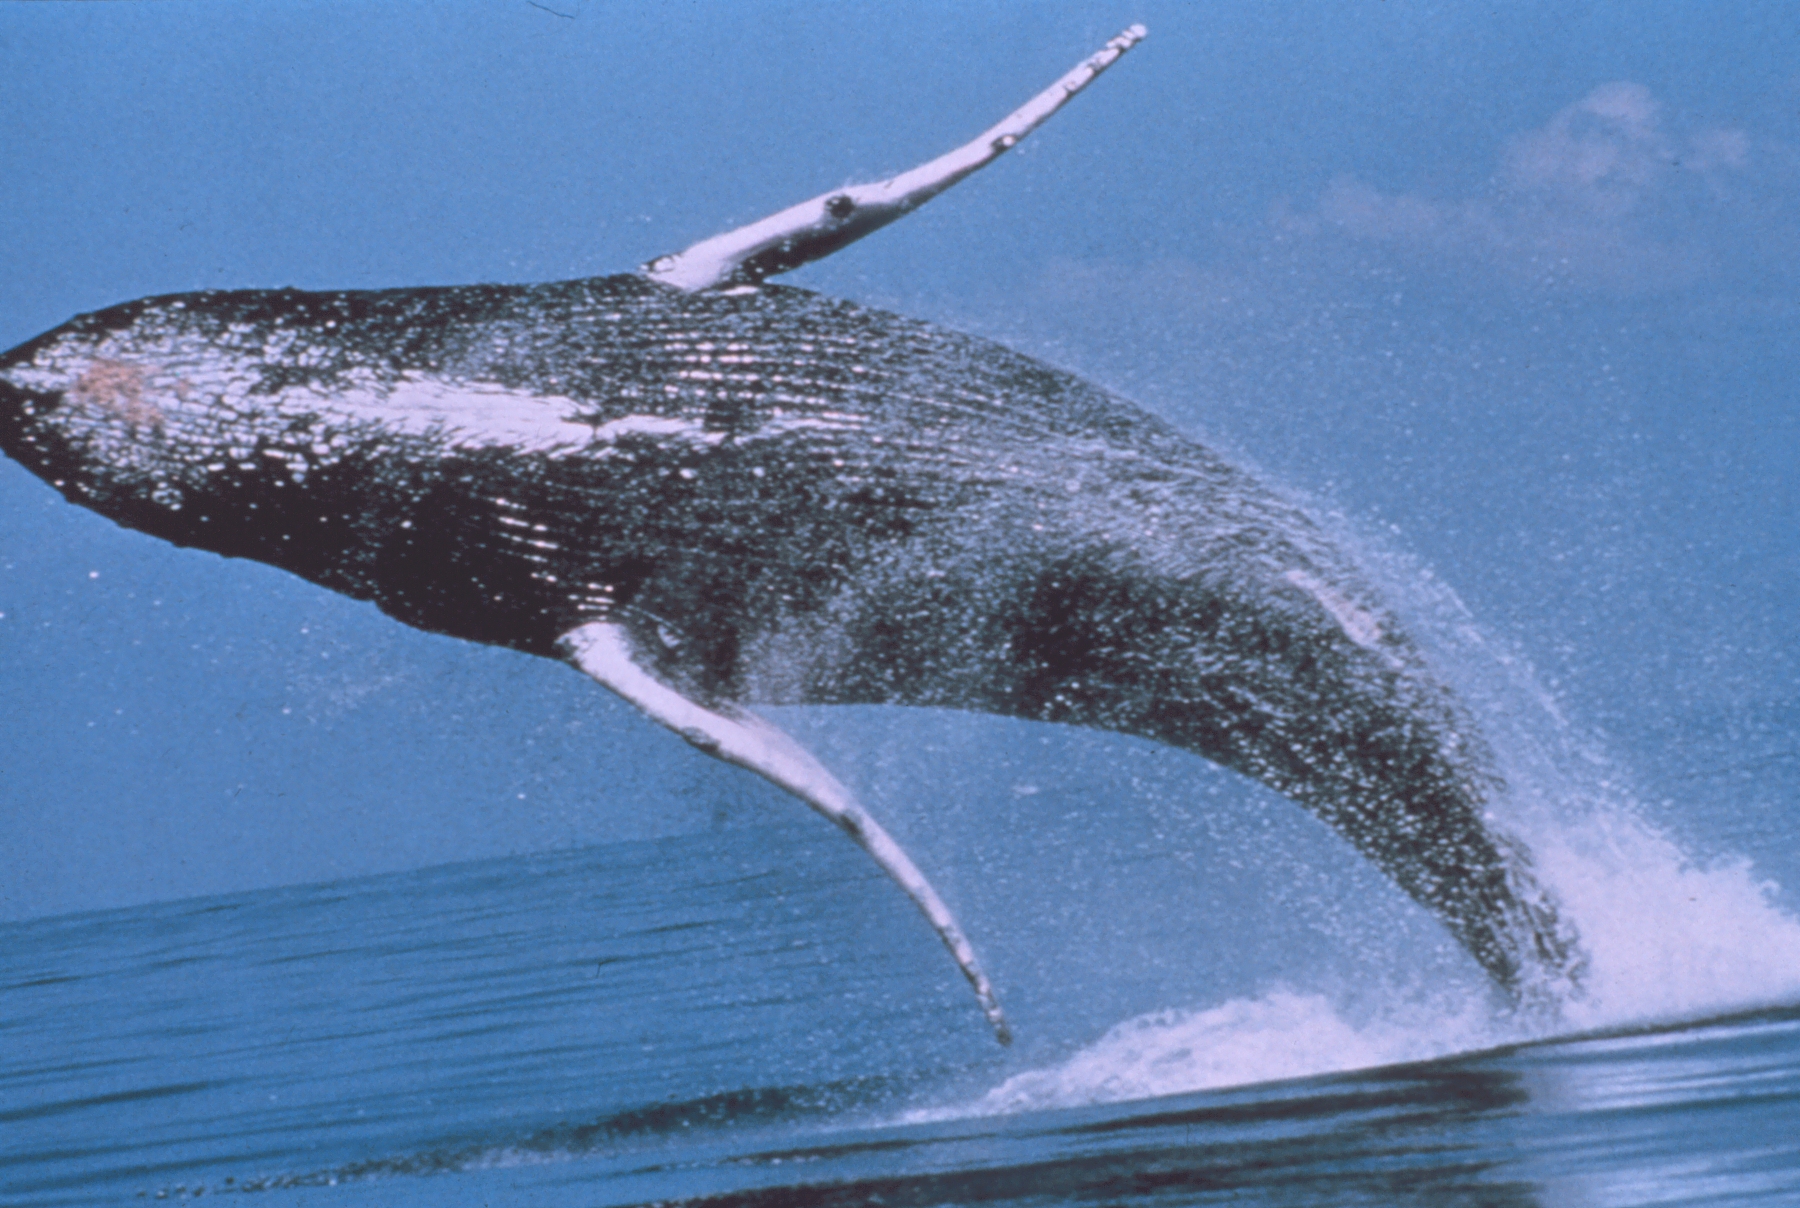 Baleine à bosse - saut spectaculaire